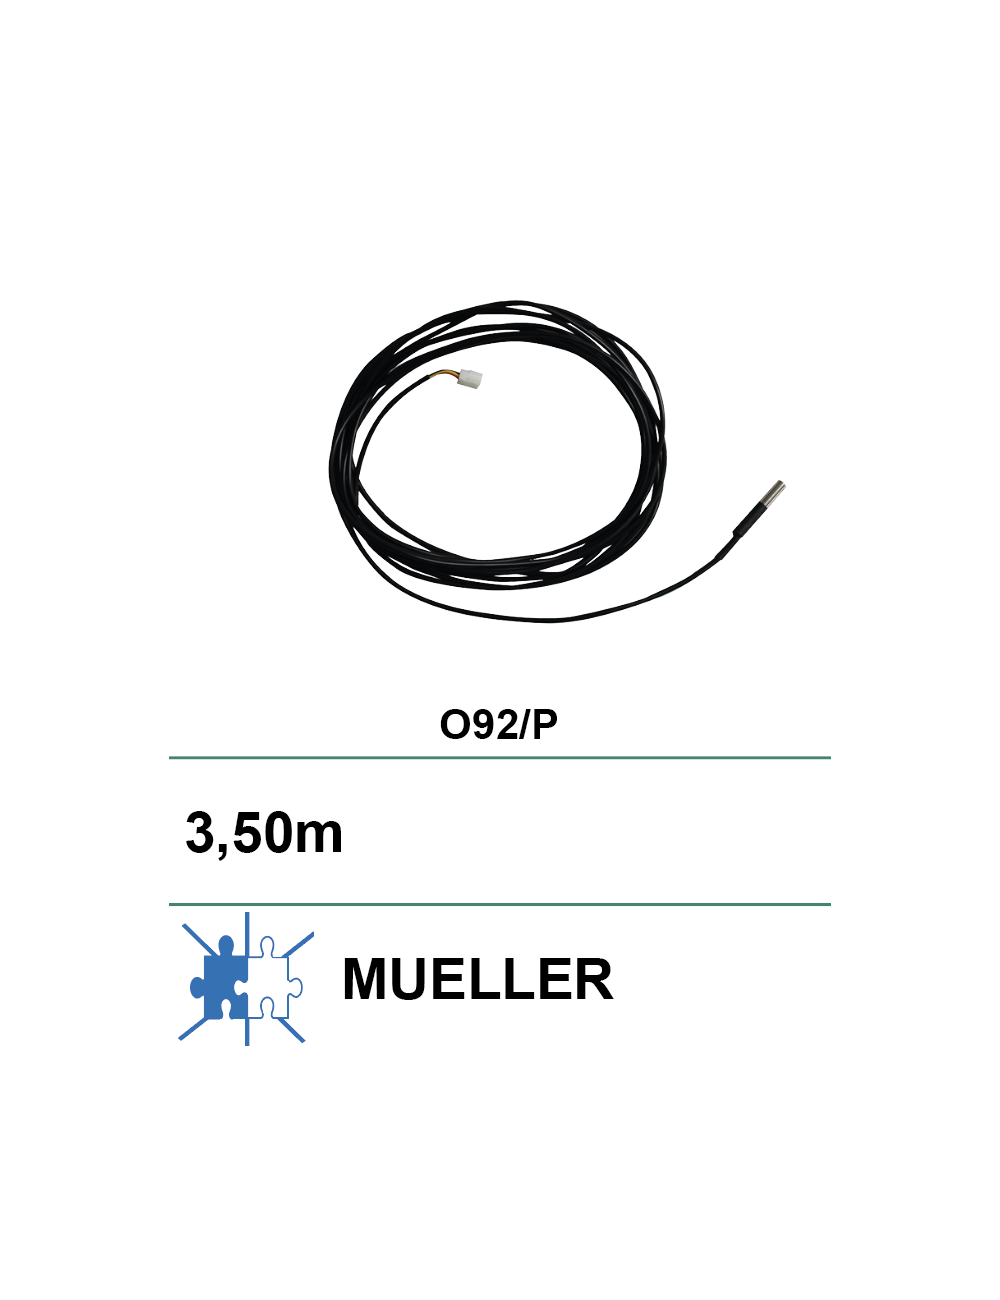 Sonde de température Mueller model O-92 et Model -P L:3,5m